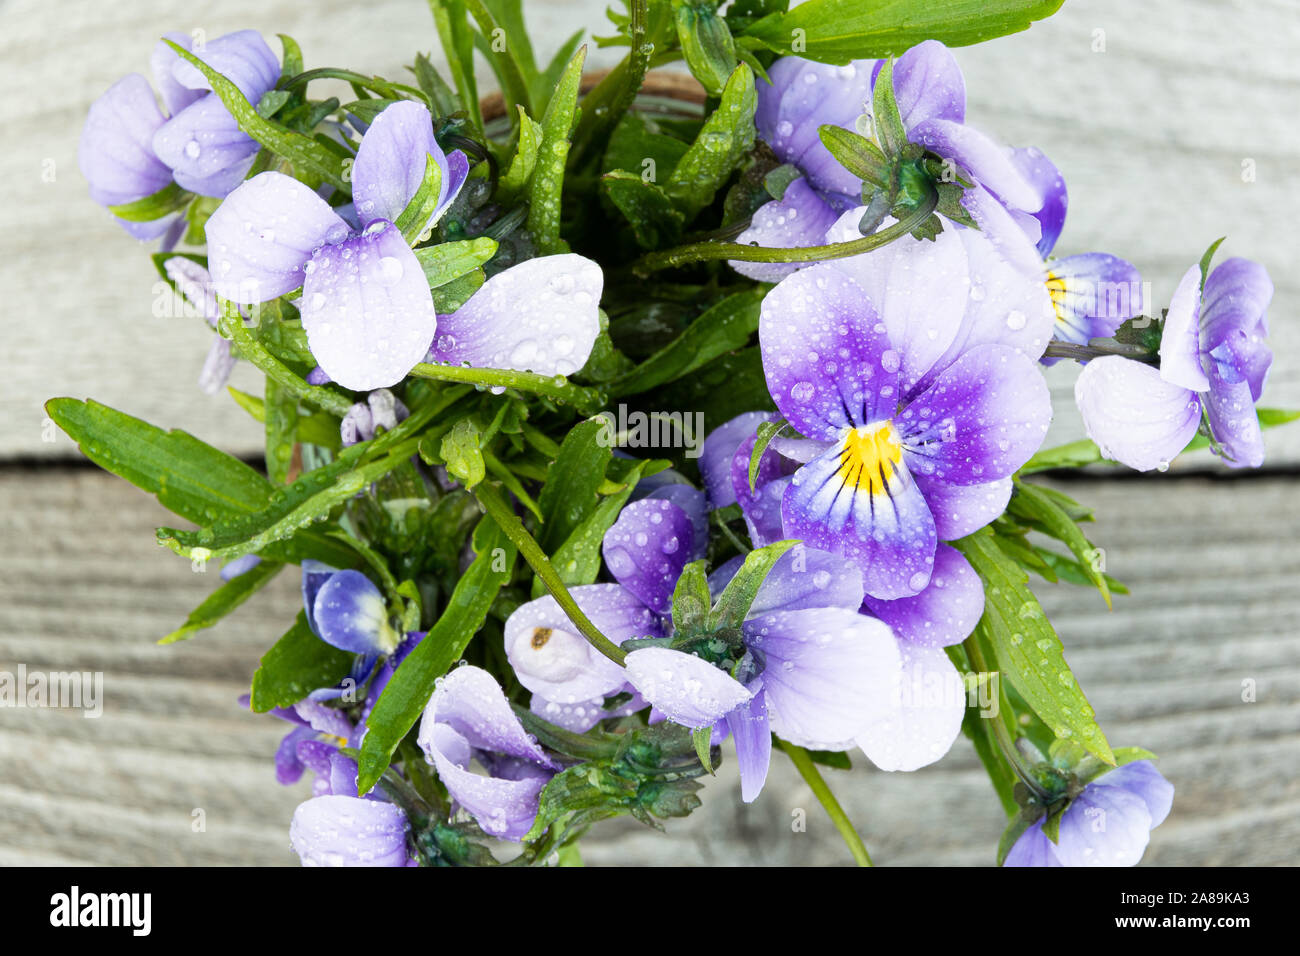 Bouquet de violettes violet sur table en bois. Anciennes cartes avec des fleurs de jardin Banque D'Images